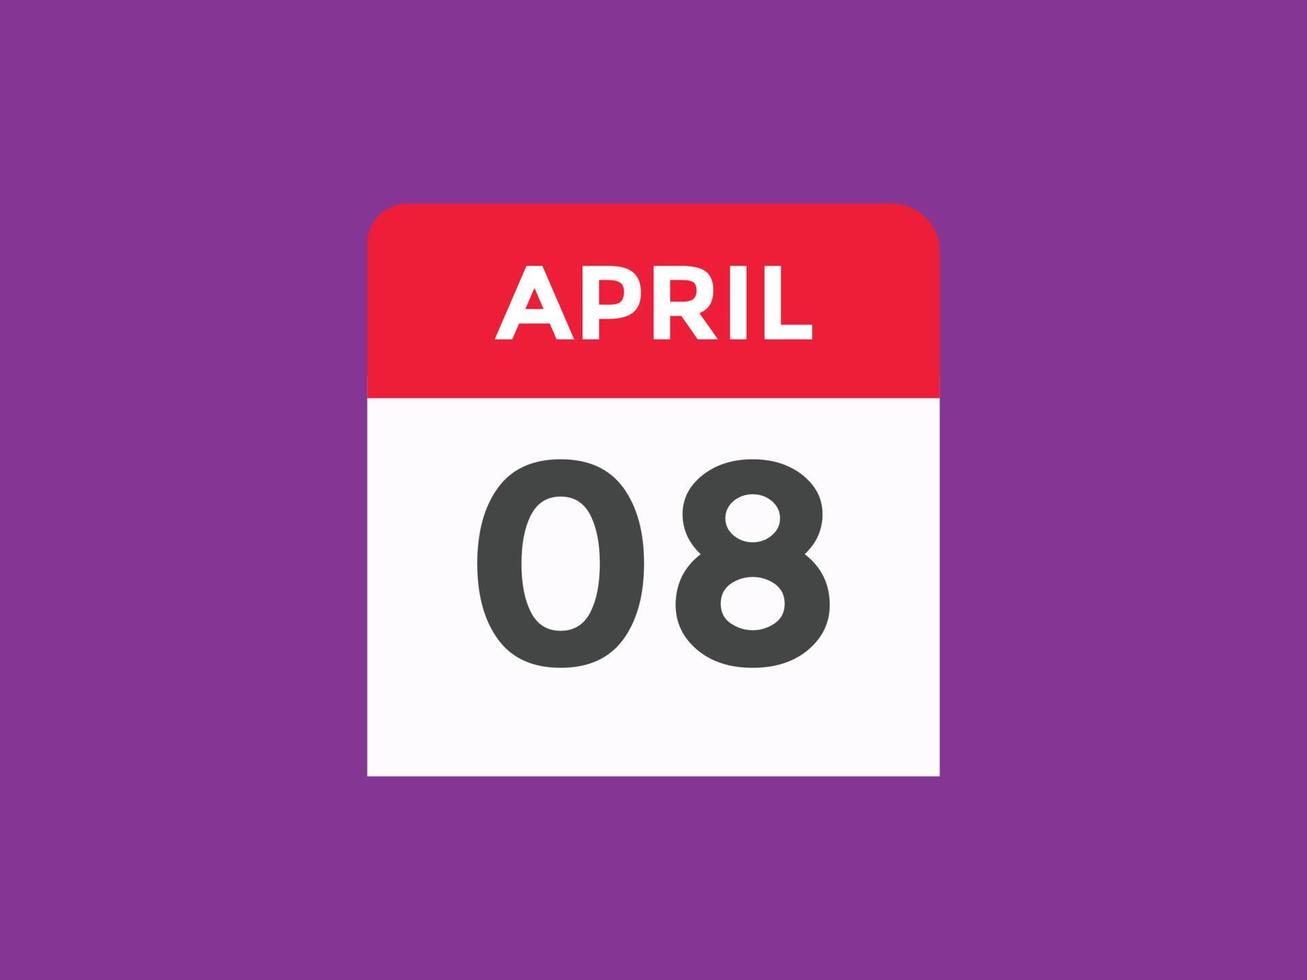 aprile 8 calendario promemoria. 8 ° aprile quotidiano calendario icona modello. calendario 8 ° aprile icona design modello. vettore illustrazione